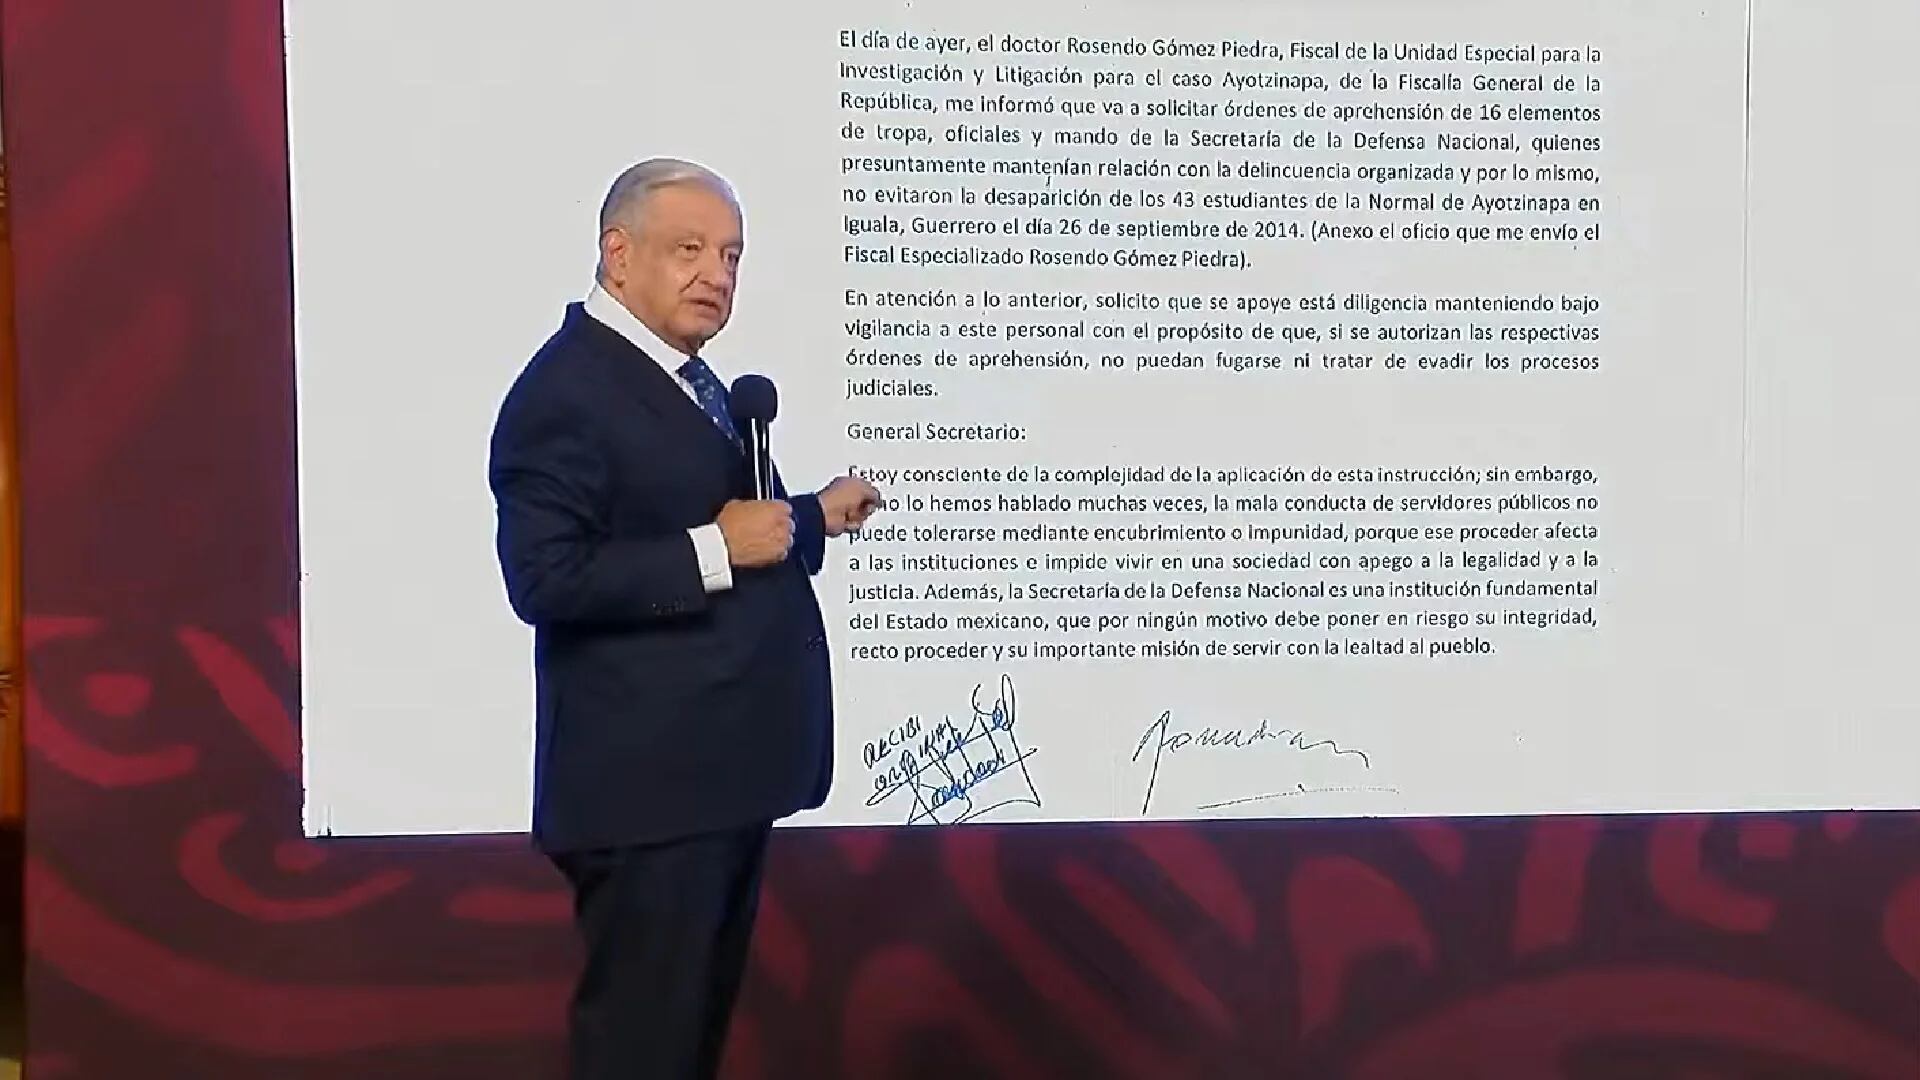 El presidente López Obrador hizo públicas dos cartas que envió a la Sedena sobre la detención se elementos del Ejército ligados a la desaparición de los estudiantes. (Presidencia)